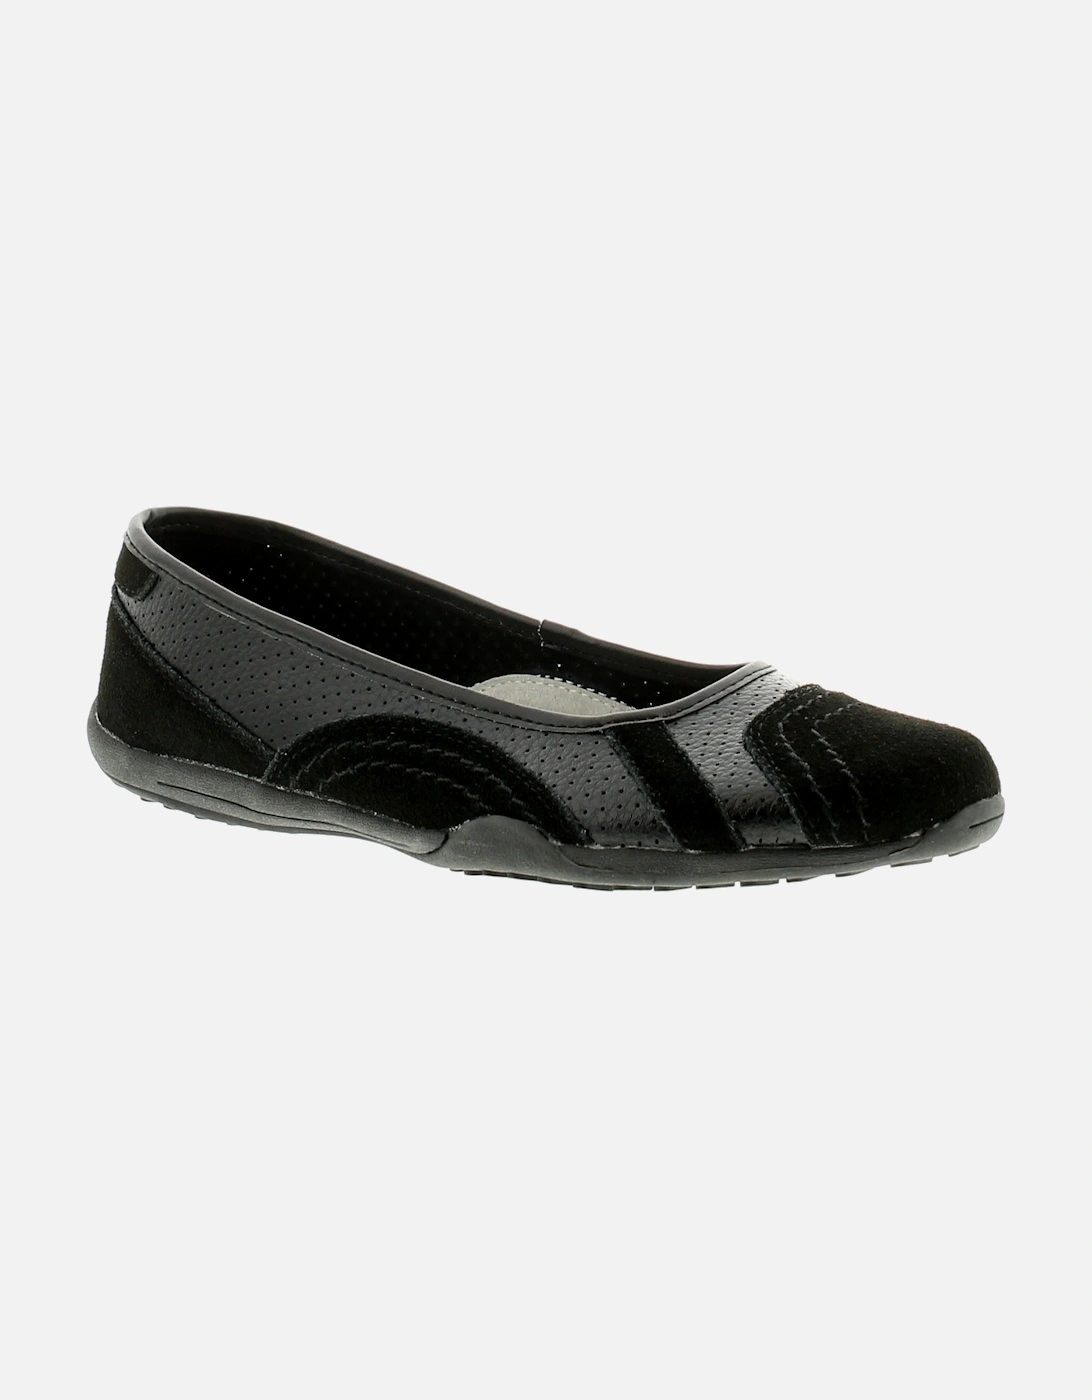 Womens Flat Shoes Jackie Leather Slip On black UK Size, 6 of 5